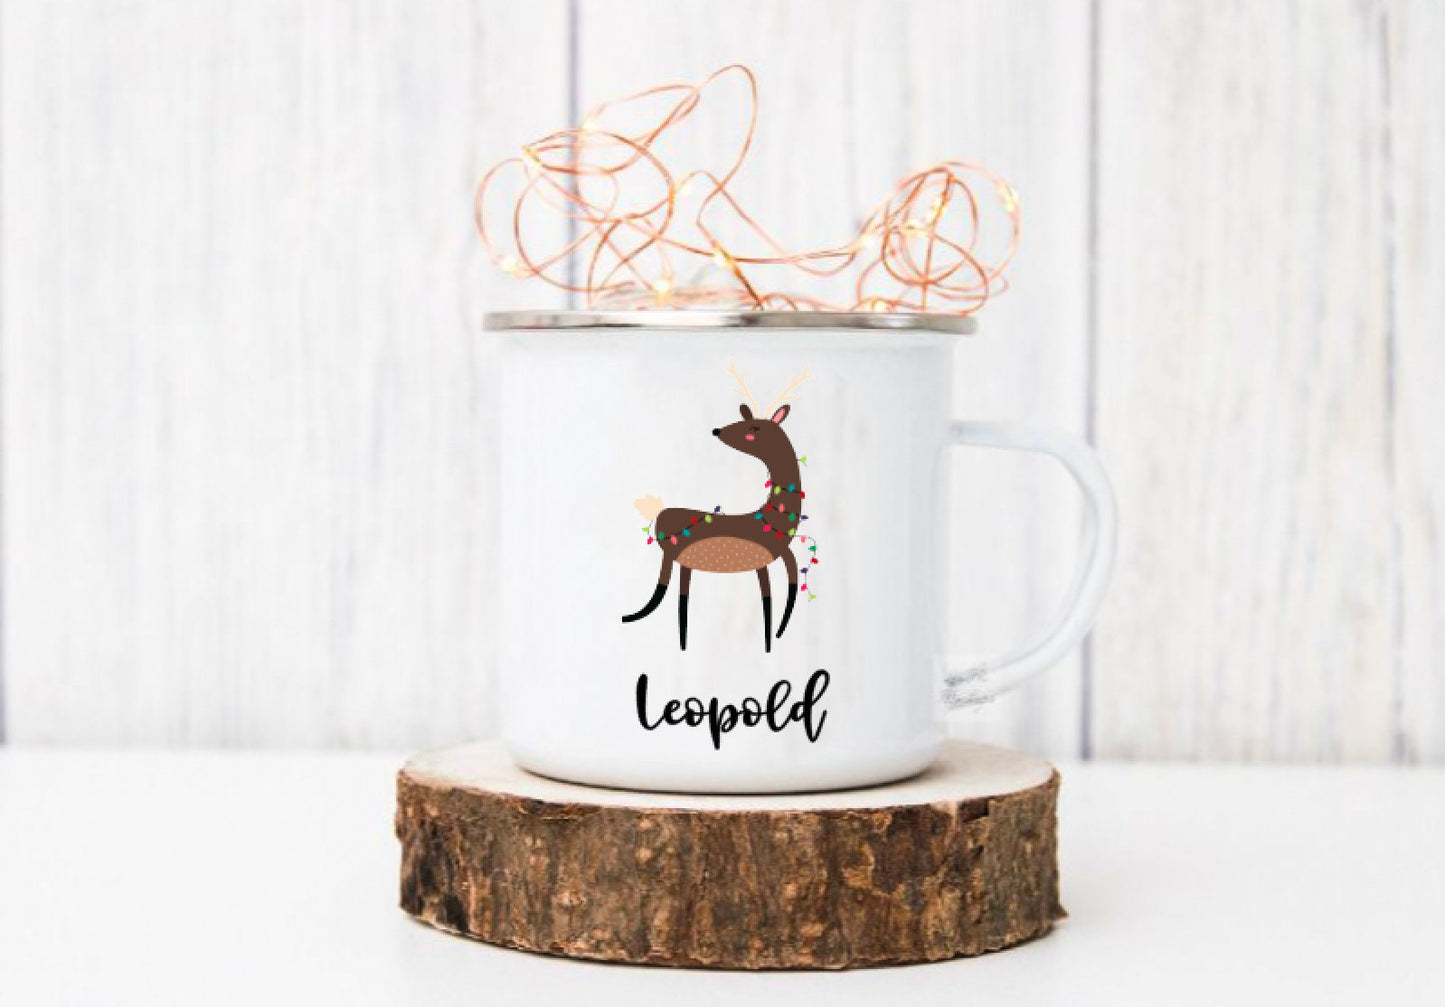 Emaille Tasse mit weihnachtlichten Motiven - Geschenk für die Familie - personalisiert - Mengenrabatt